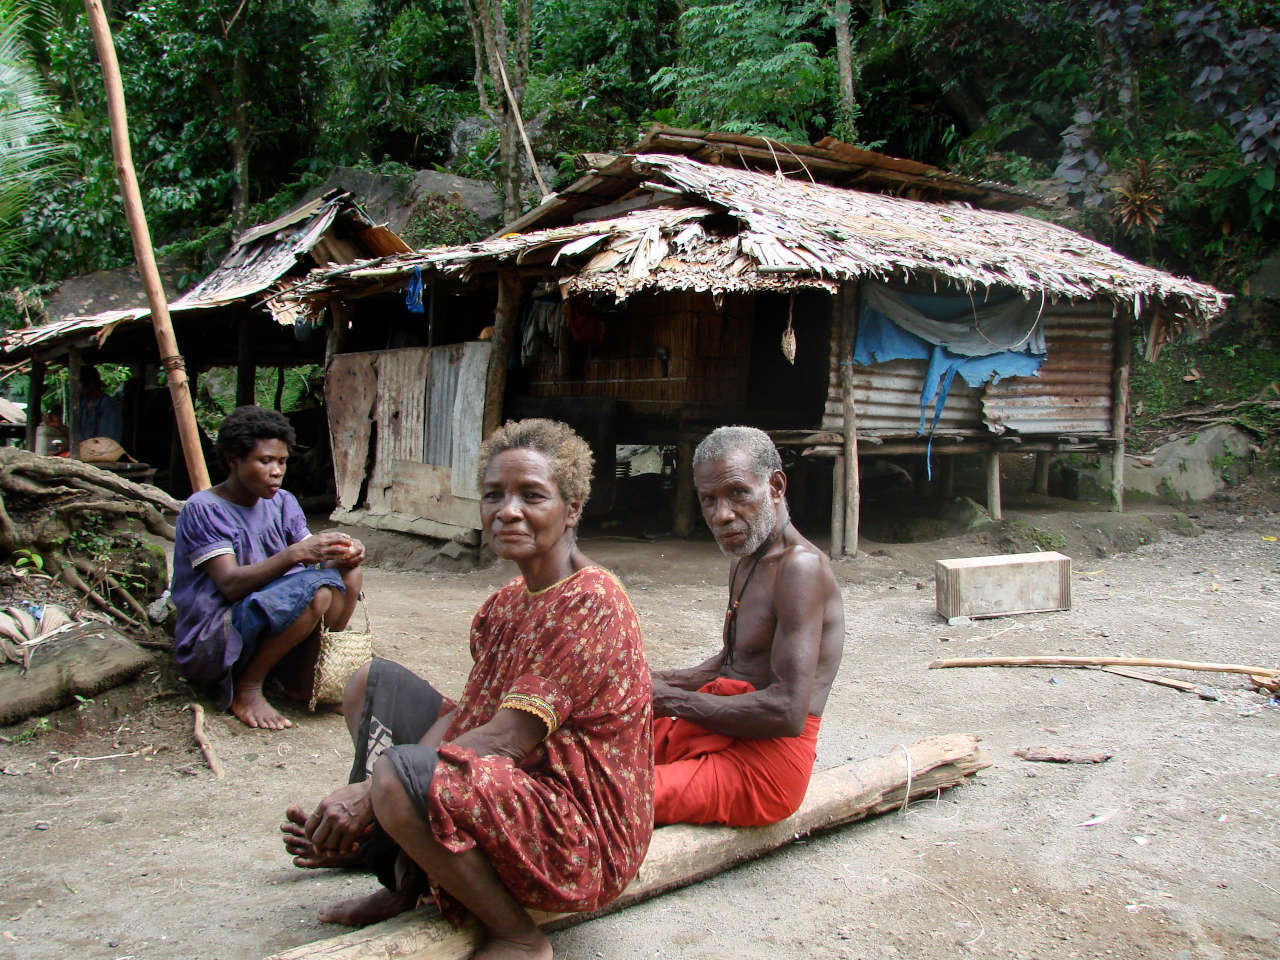 Locals in Garove village